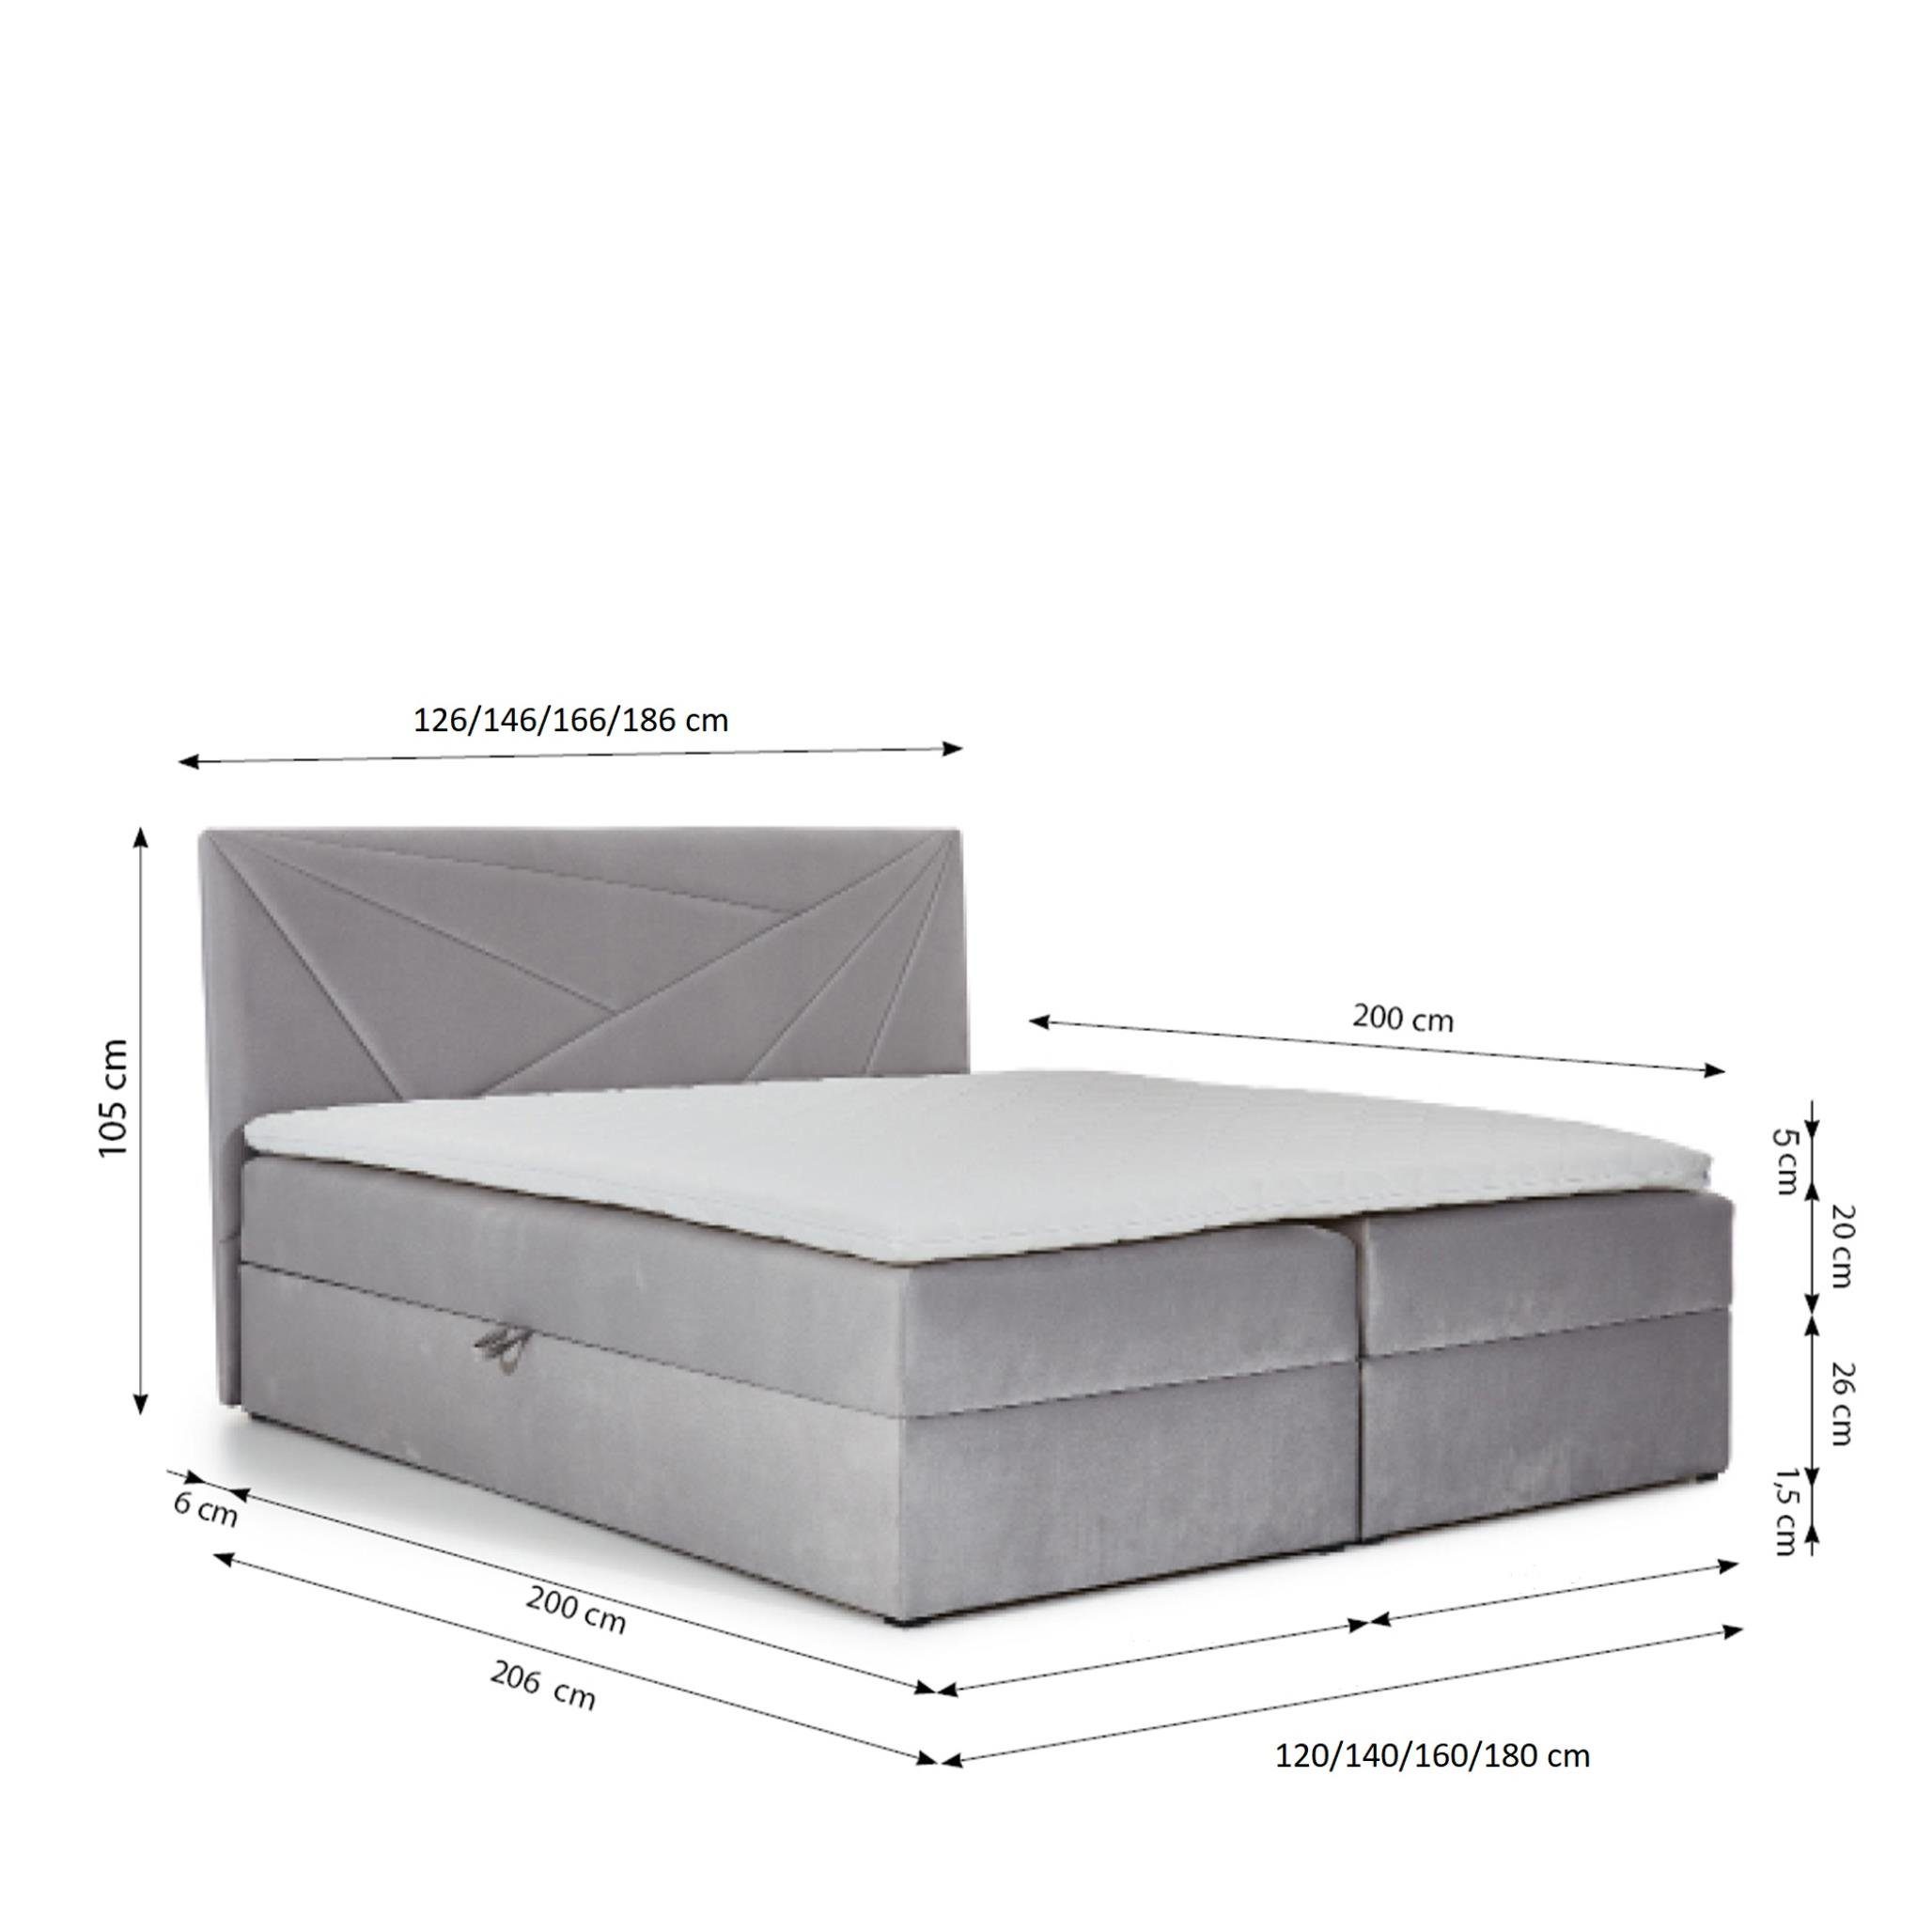 Stoffe Doppelbett Creme Boxspringbett TREZO 120x200 5 mit pflegeleichte Furnix Topper, hochwertige Bettkasten und